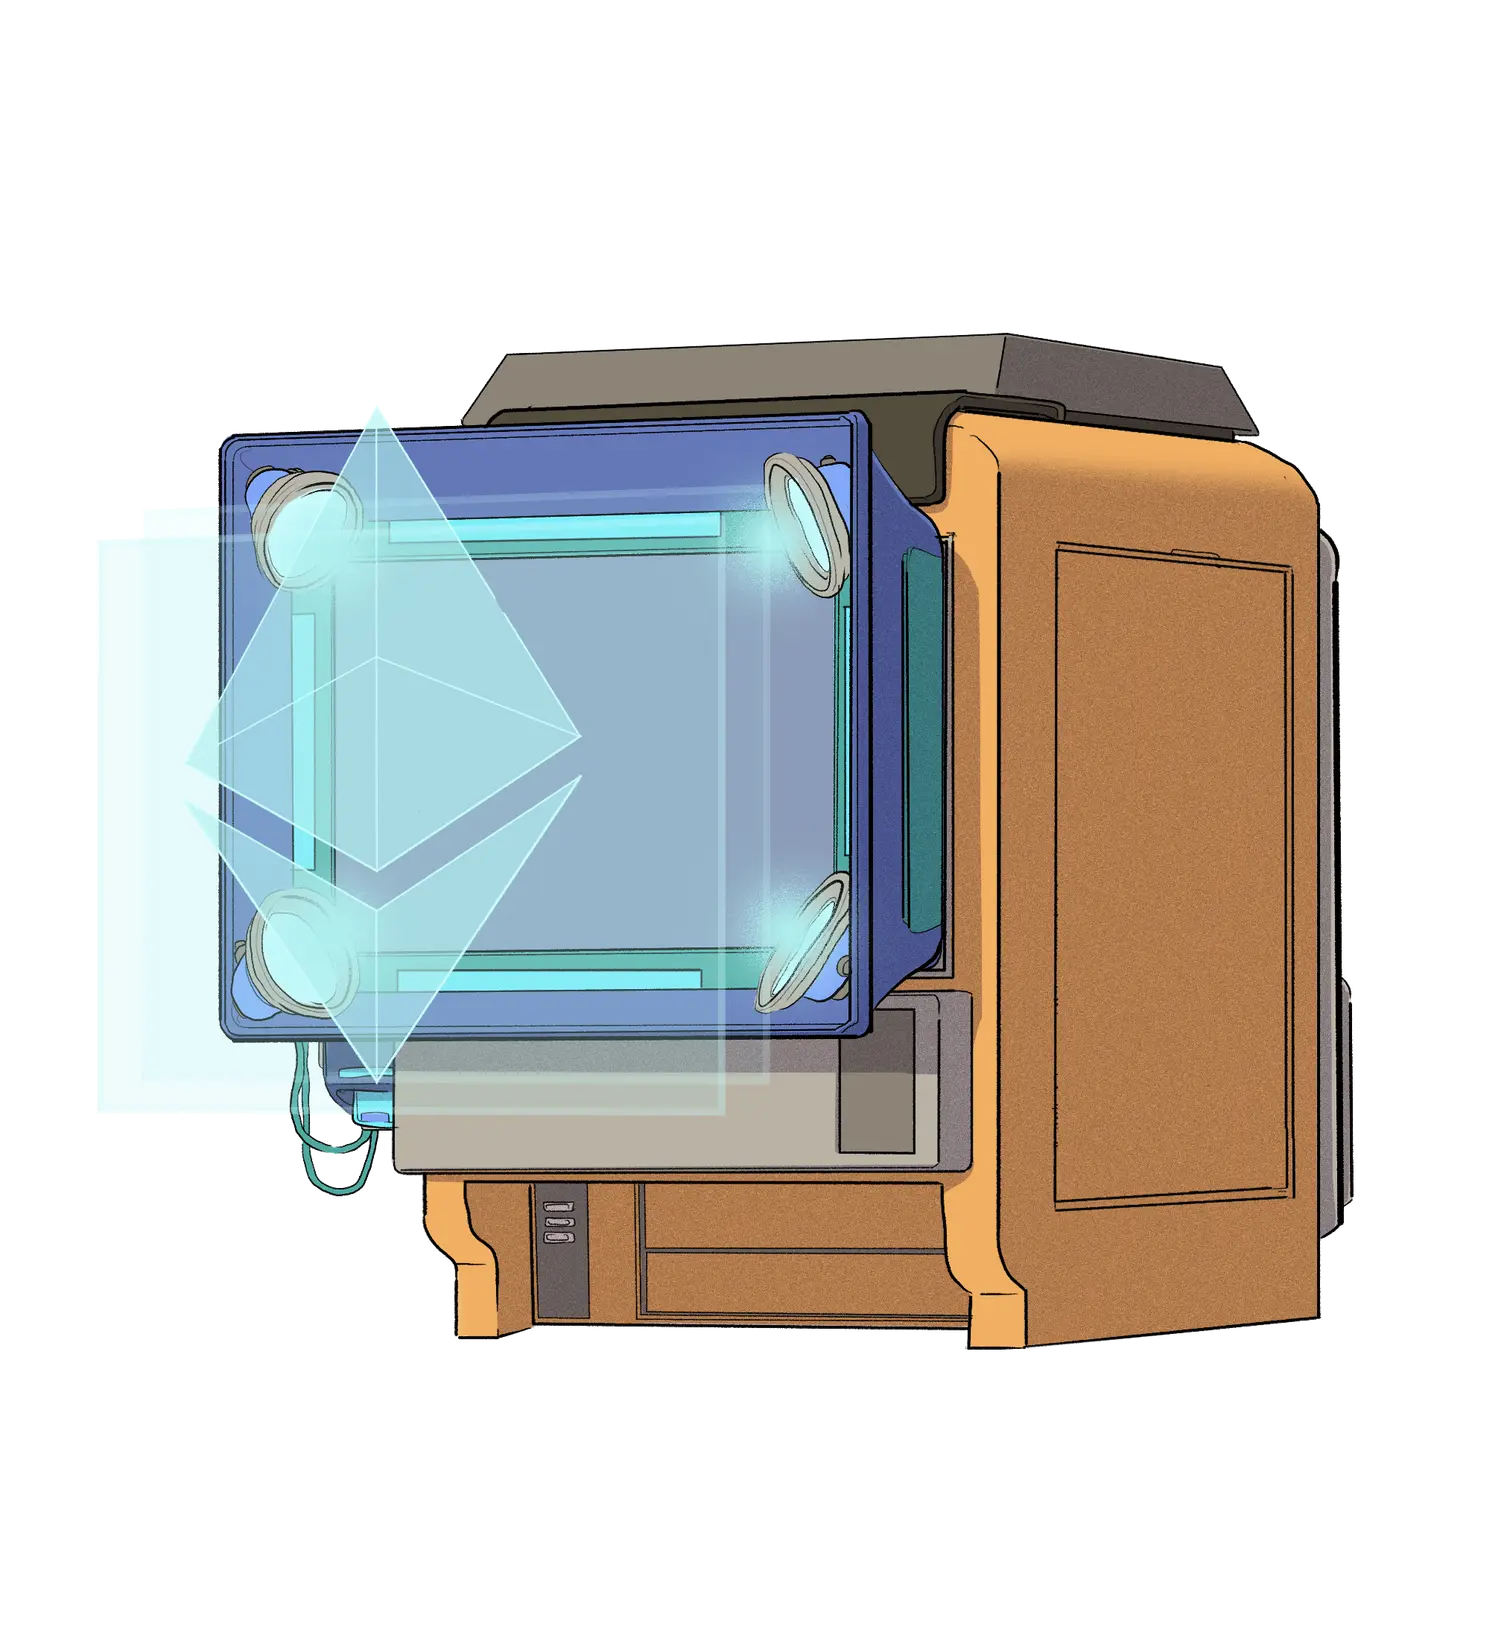 Um logo Eth sendo exibido via holograma.